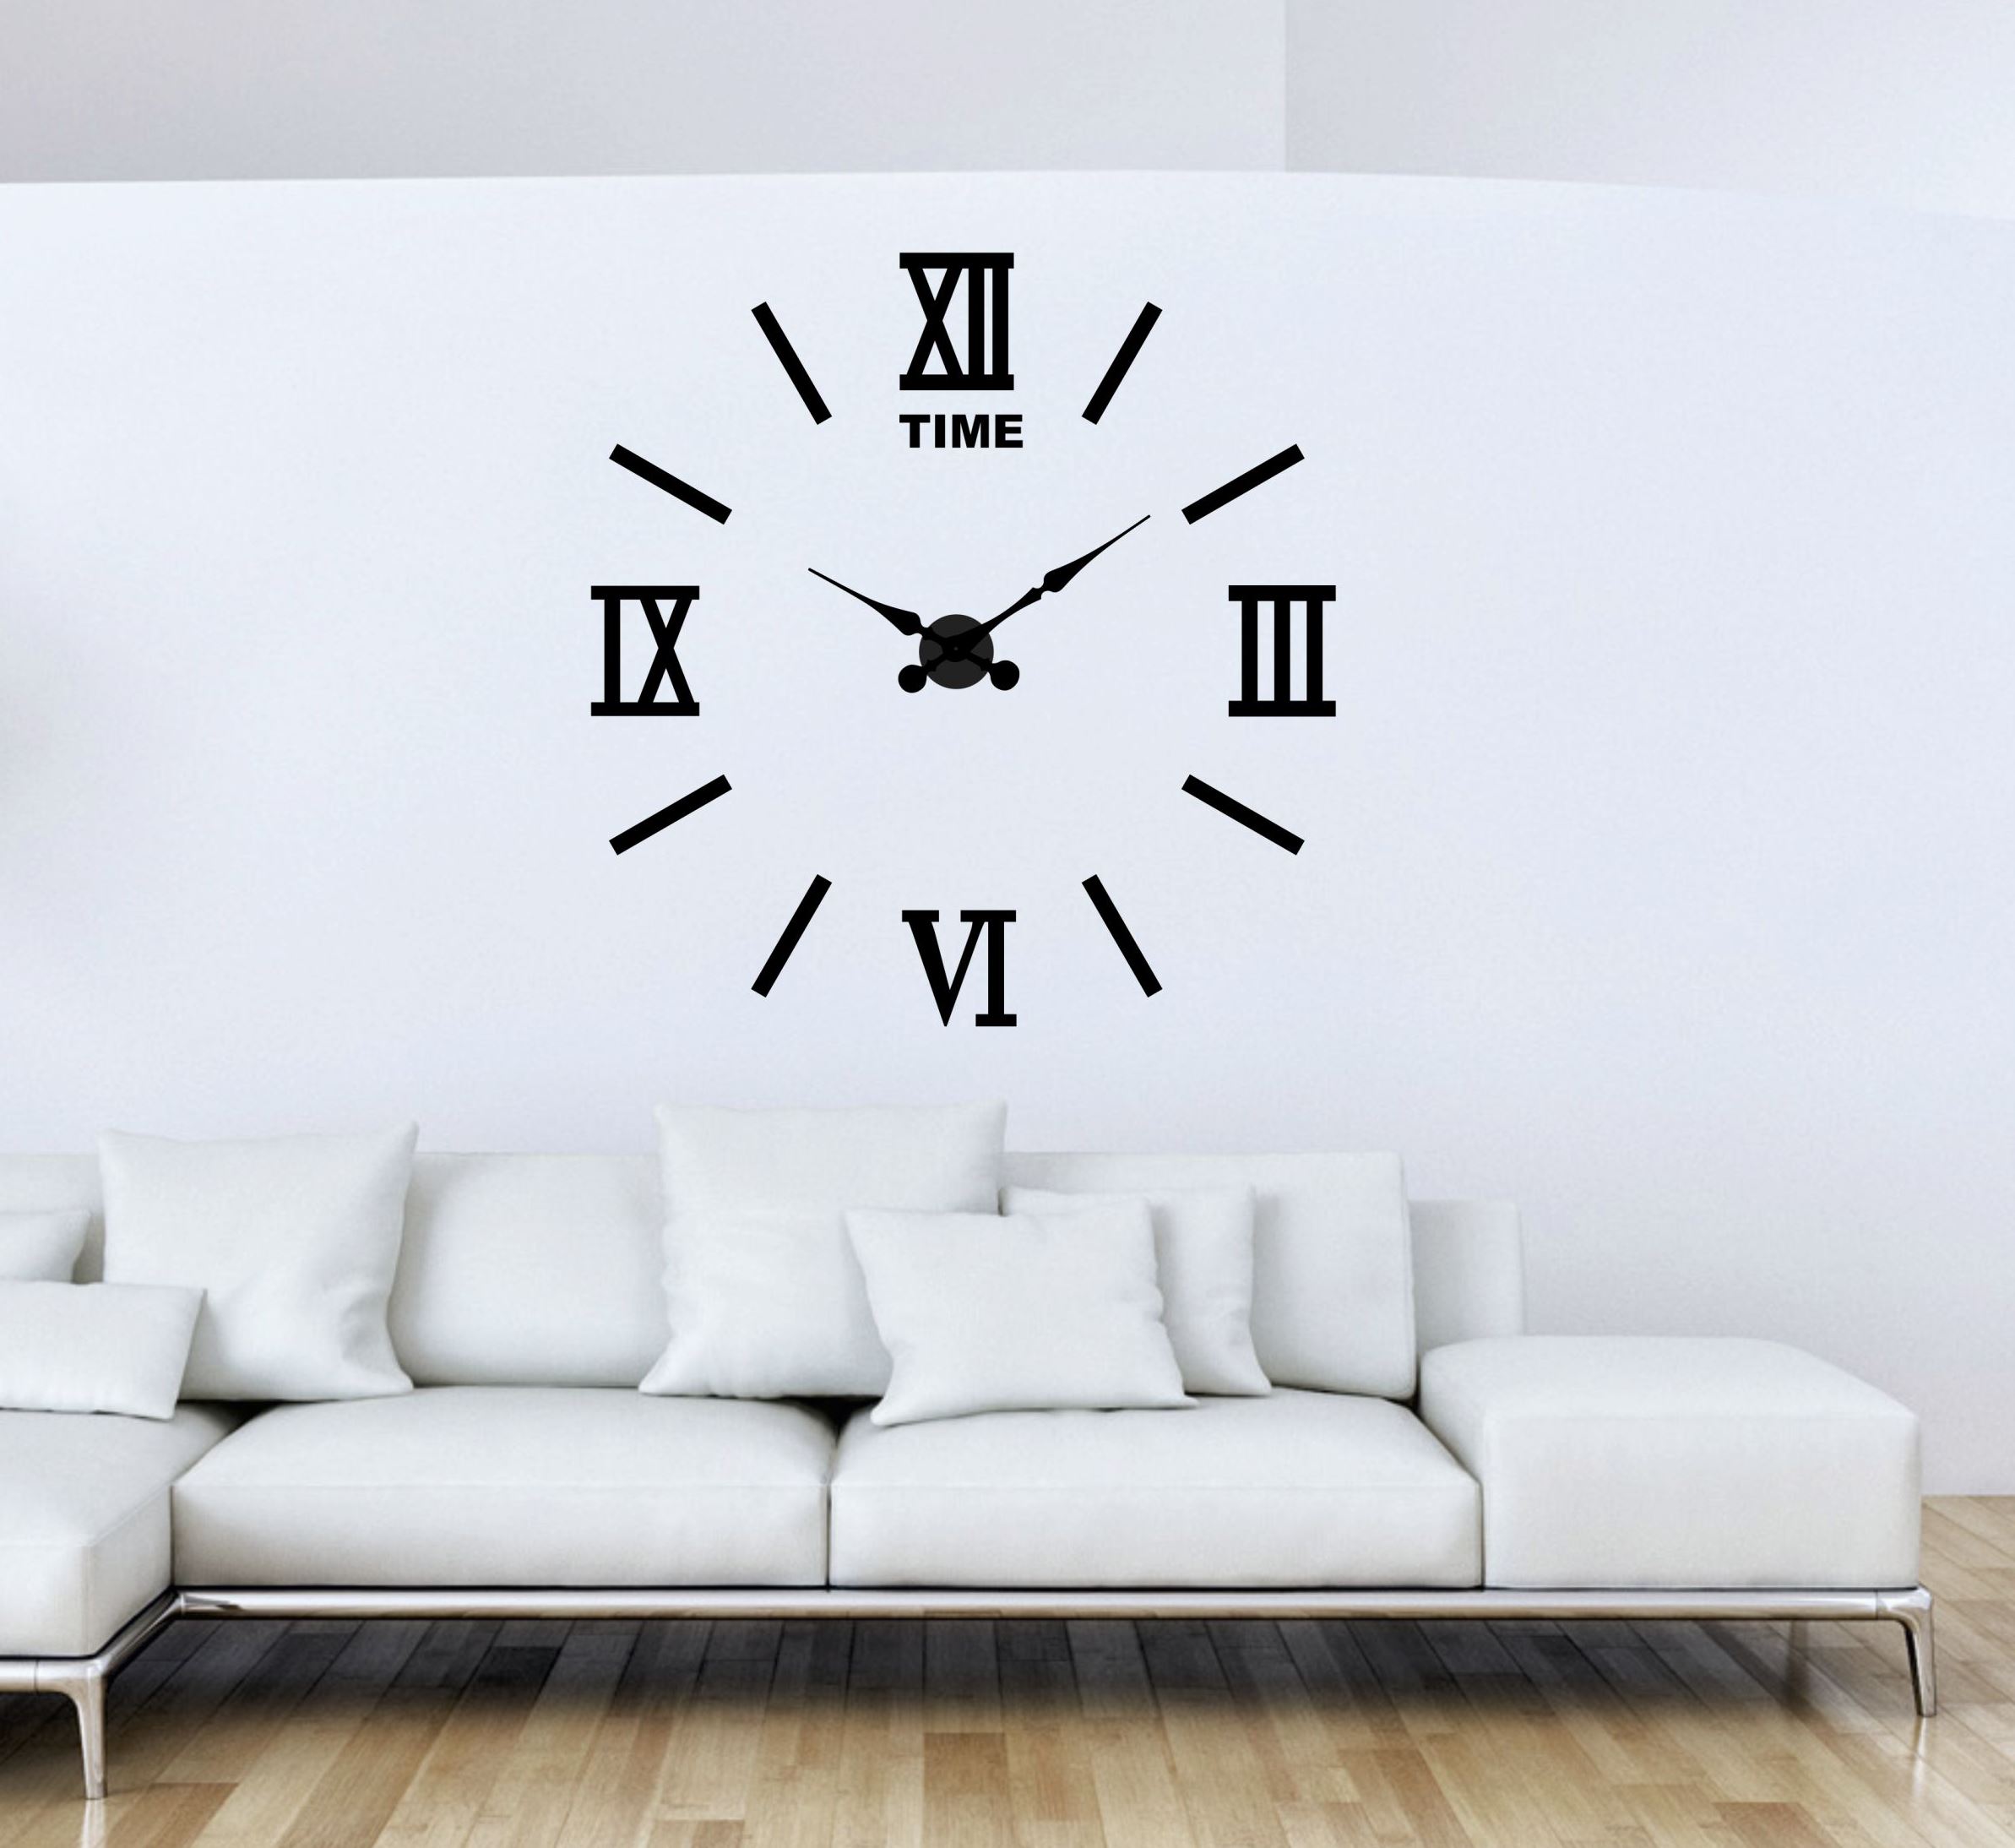  آموزش نصب ساعت بزرگ دیواری قیمت ساعت دیواری اعداد یونانی بزرگ برای سالن پذیرایی